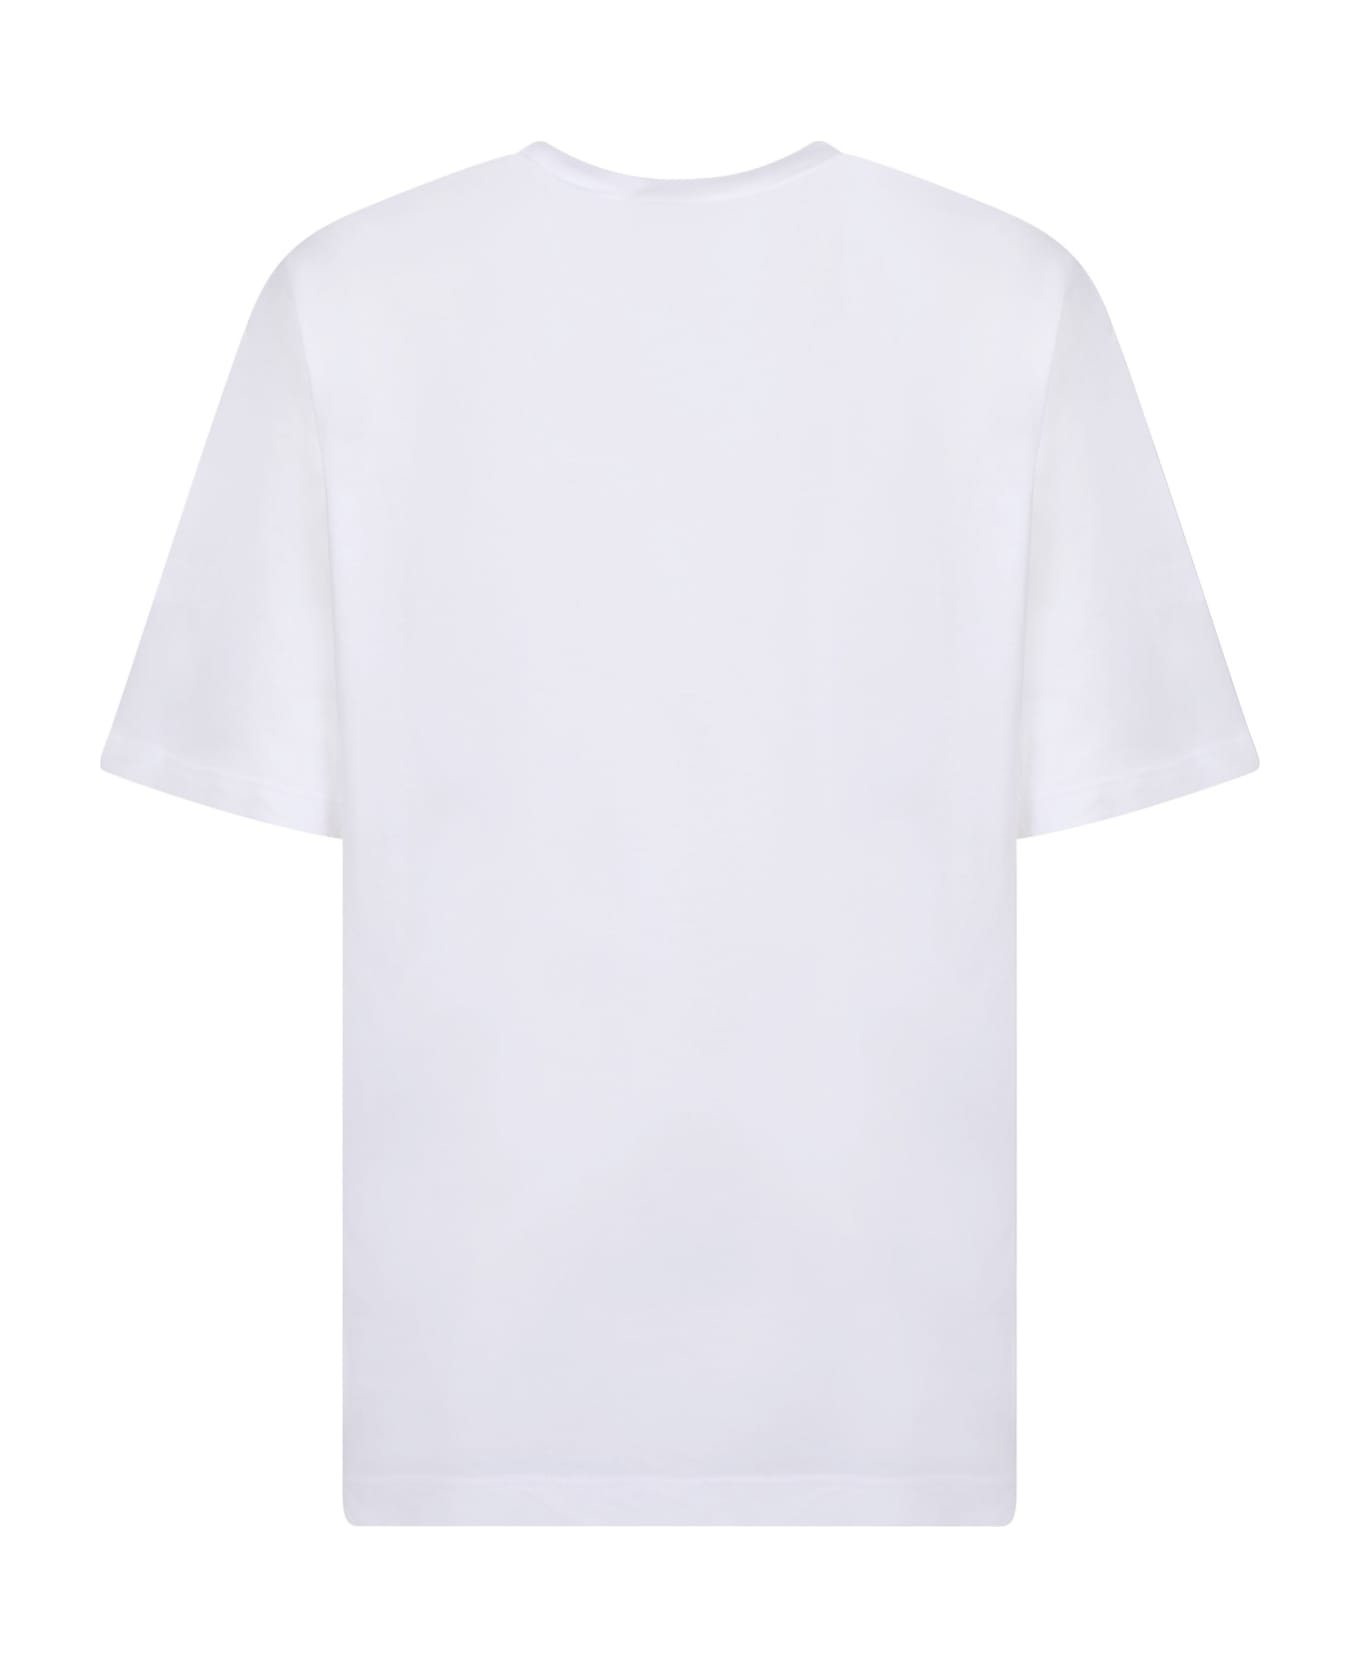 Dsquared2 White Rainbow T-shirt - White Tシャツ